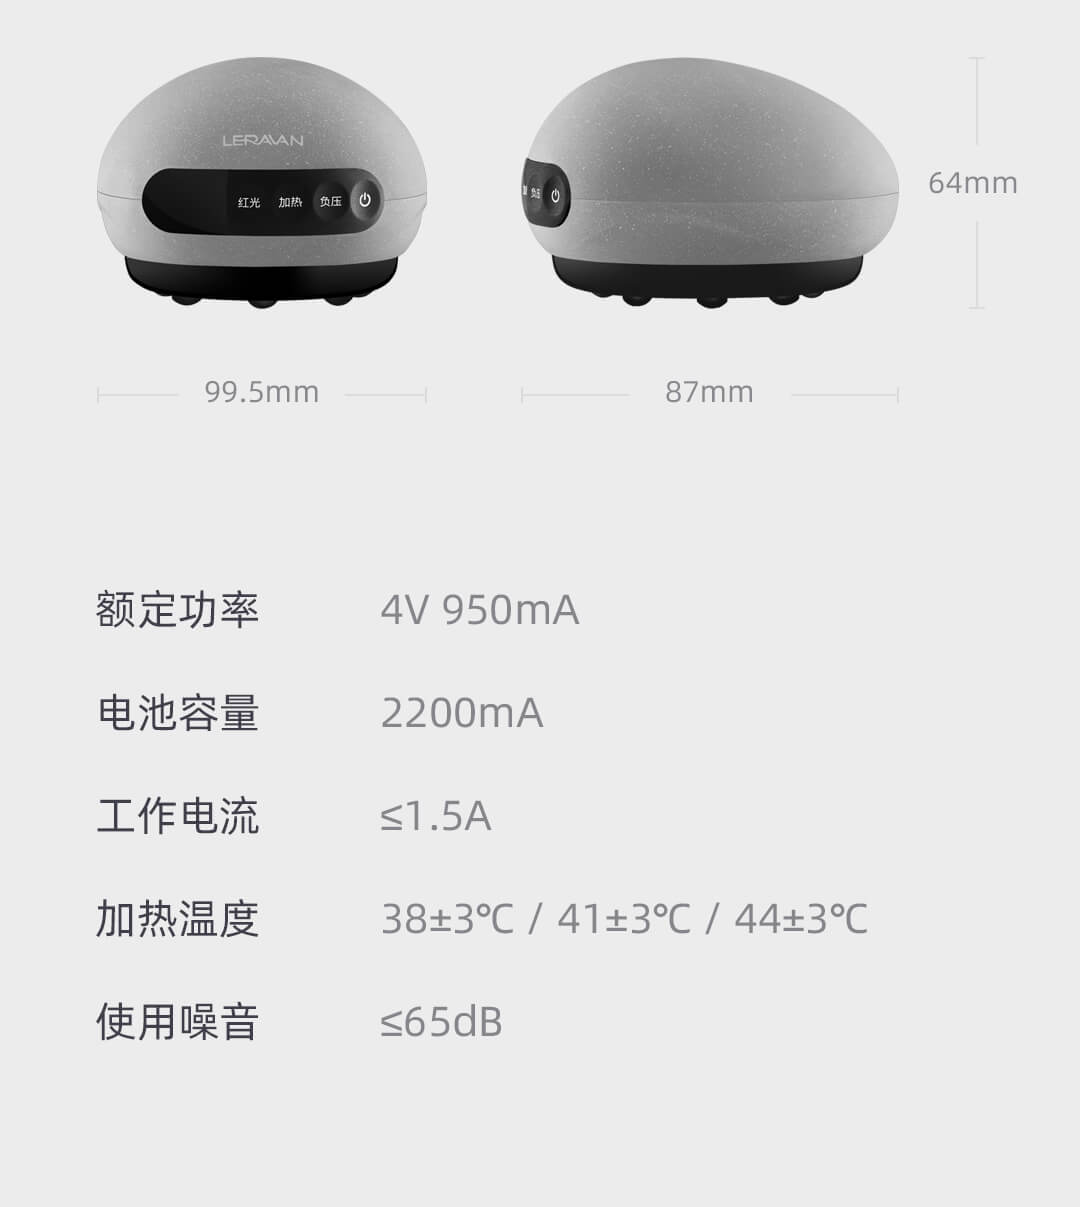 Интеллектуальный массажный аппарат LERAVAG от Xiaomi